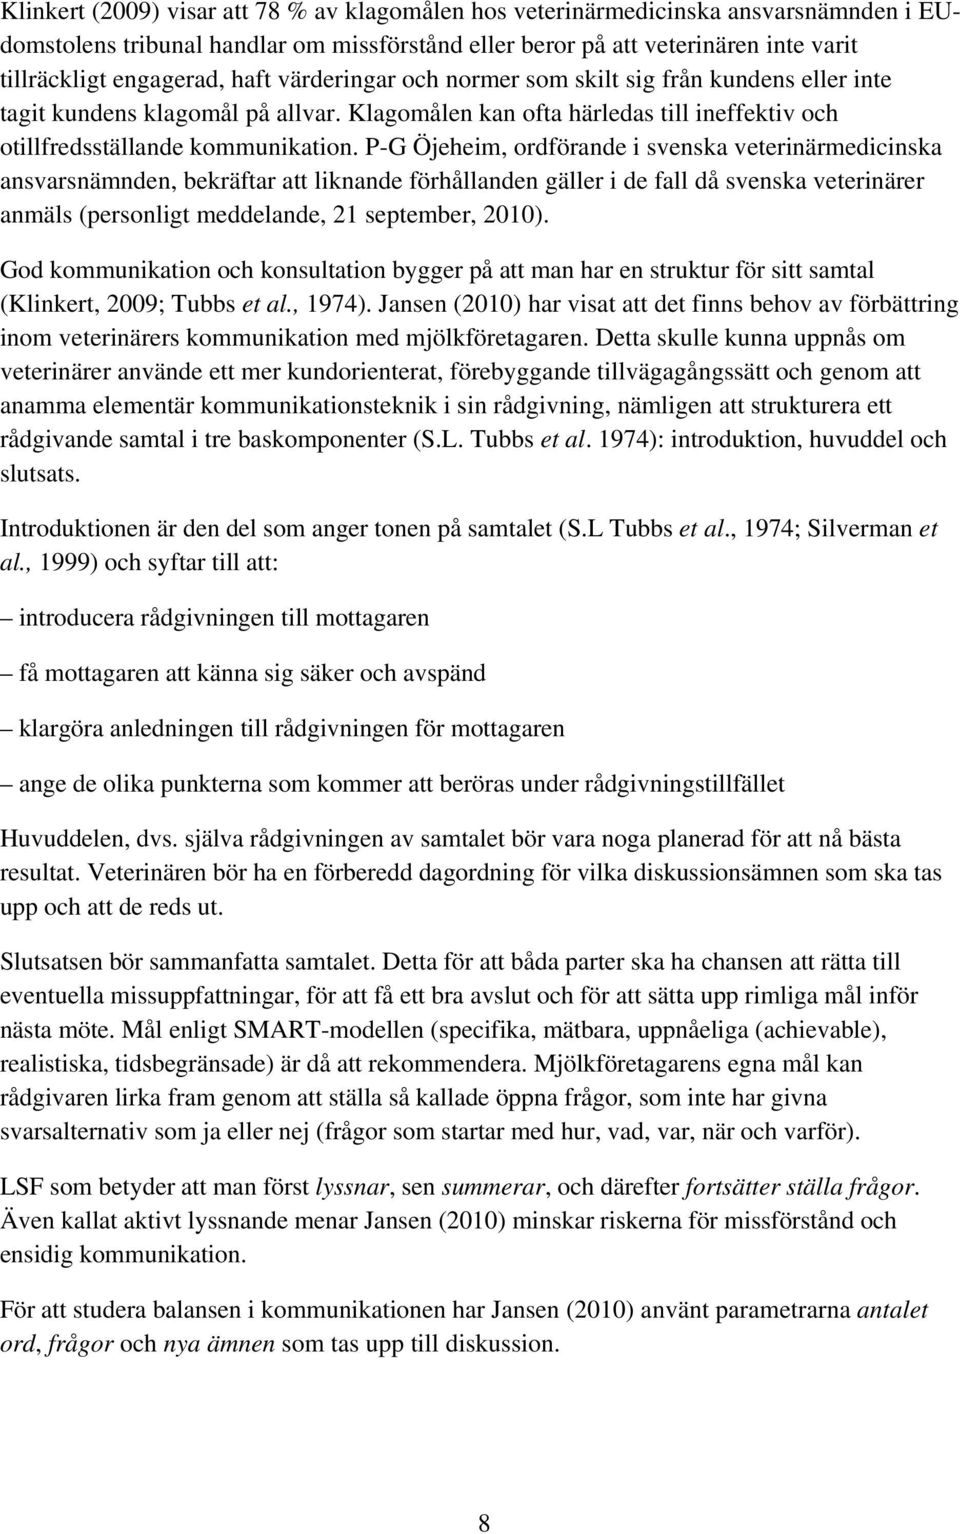 P-G Öjeheim, ordförande i svenska veterinärmedicinska ansvarsnämnden, bekräftar att liknande förhållanden gäller i de fall då svenska veterinärer anmäls (personligt meddelande, 21 september, 2010).